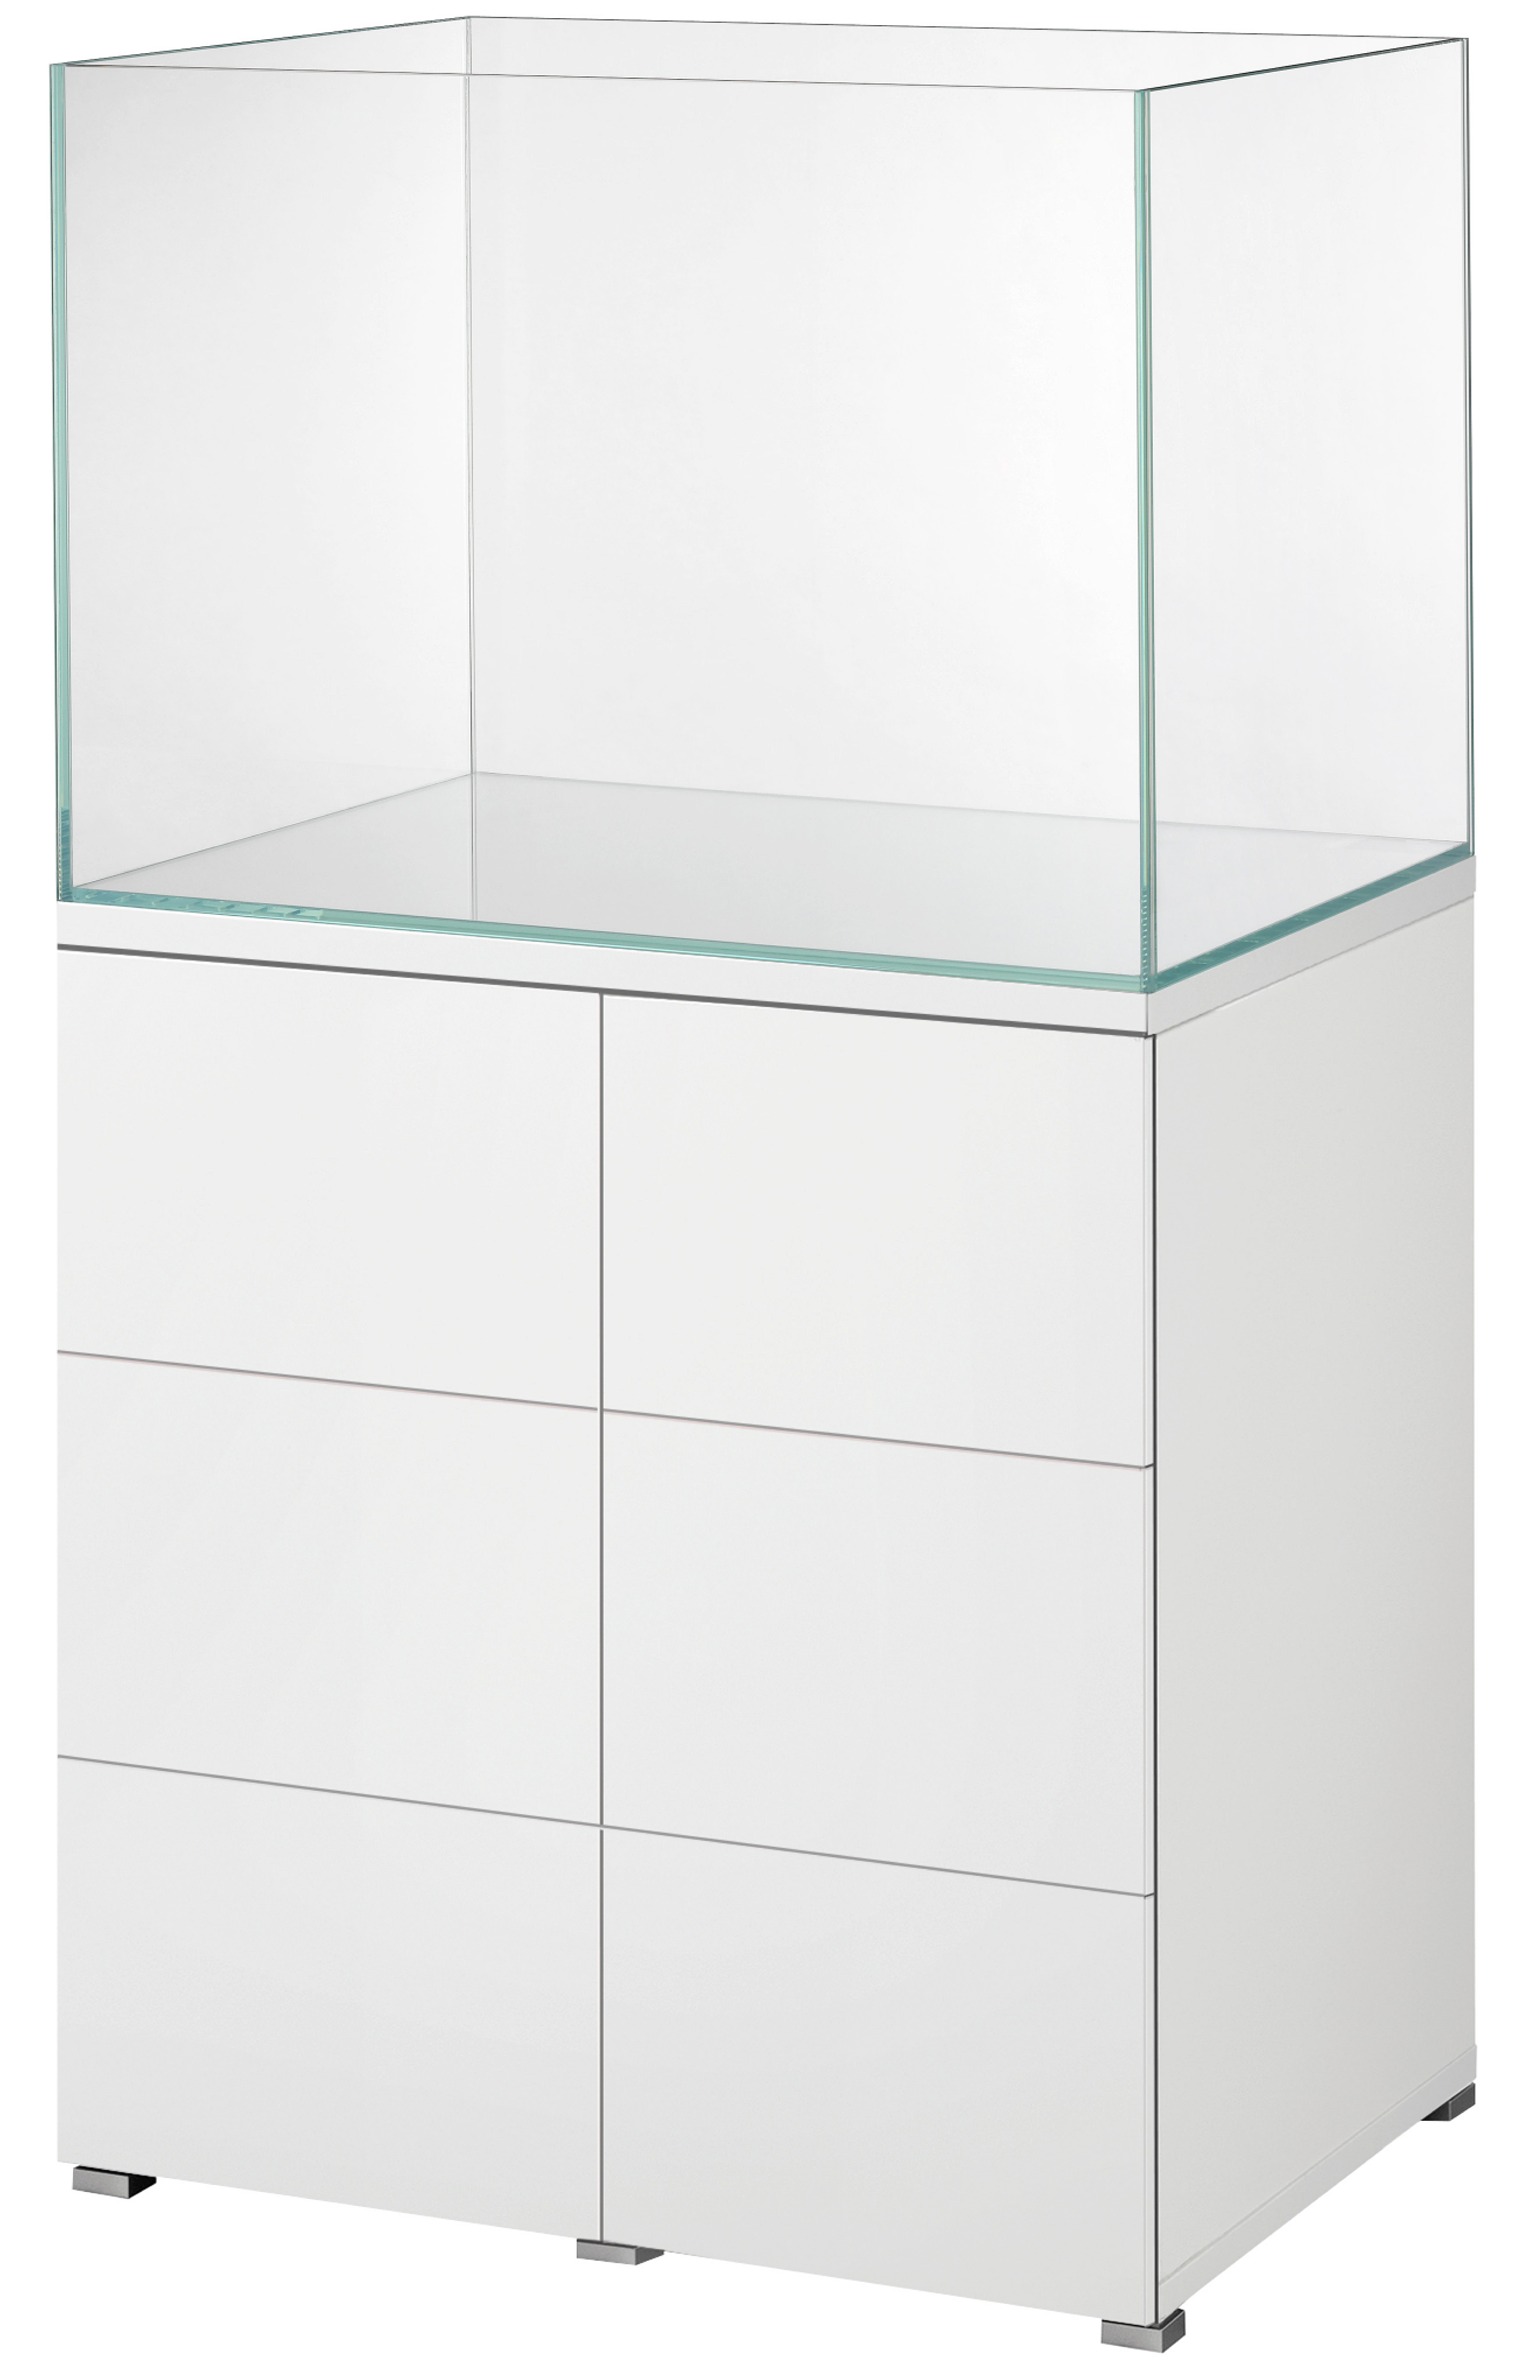 EHEIM Proxima Scape 175 L kit cuve d\'aquarium nue + meuble. Dimensions : 71 x 50 x 51 cm - Verre Ultra-Clear 8 mm d\'épais